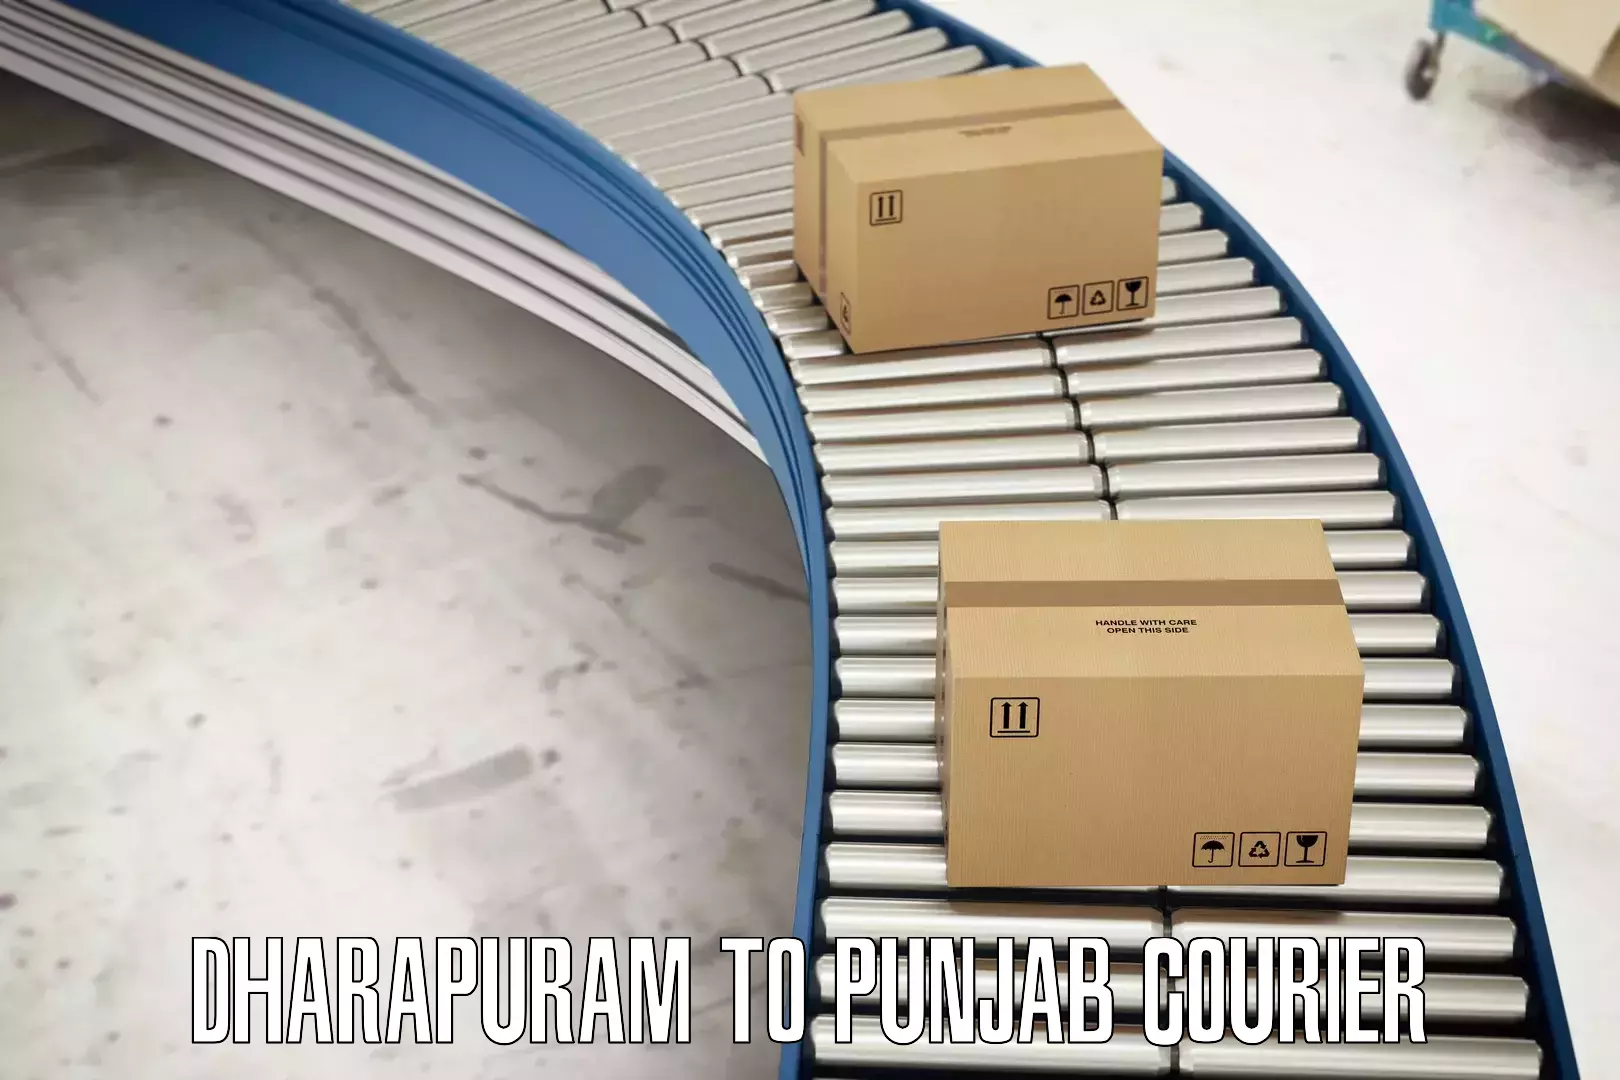 Custom courier packaging Dharapuram to Begowal